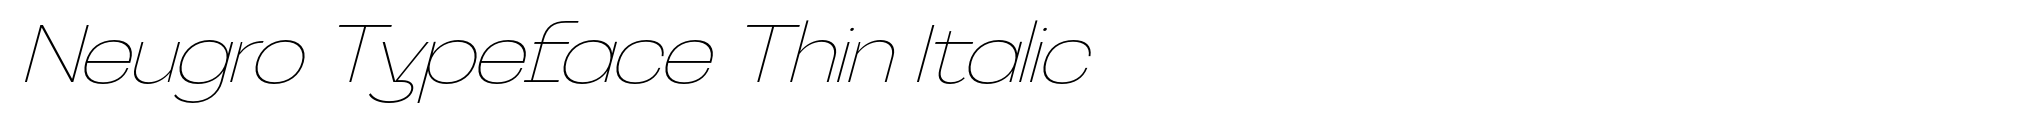 Neugro Typeface Thin Italic image